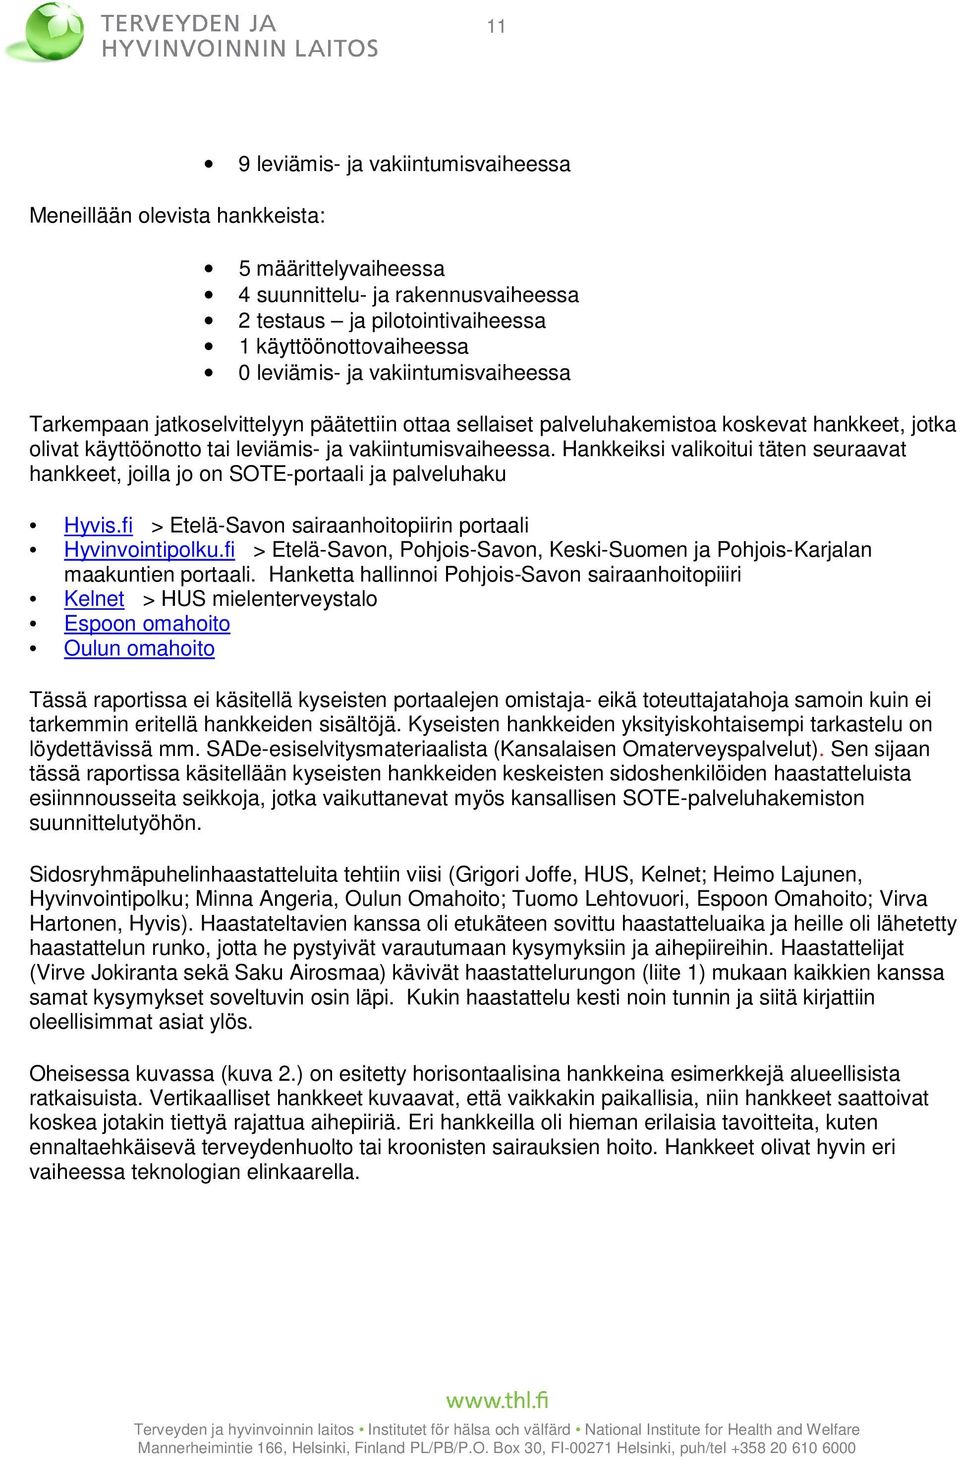 Hankkeiksi valikoitui täten seuraavat hankkeet, joilla jo on SOTE-portaali ja palveluhaku Hyvis.fi > Etelä-Savon sairaanhoitopiirin portaali Hyvinvointipolku.